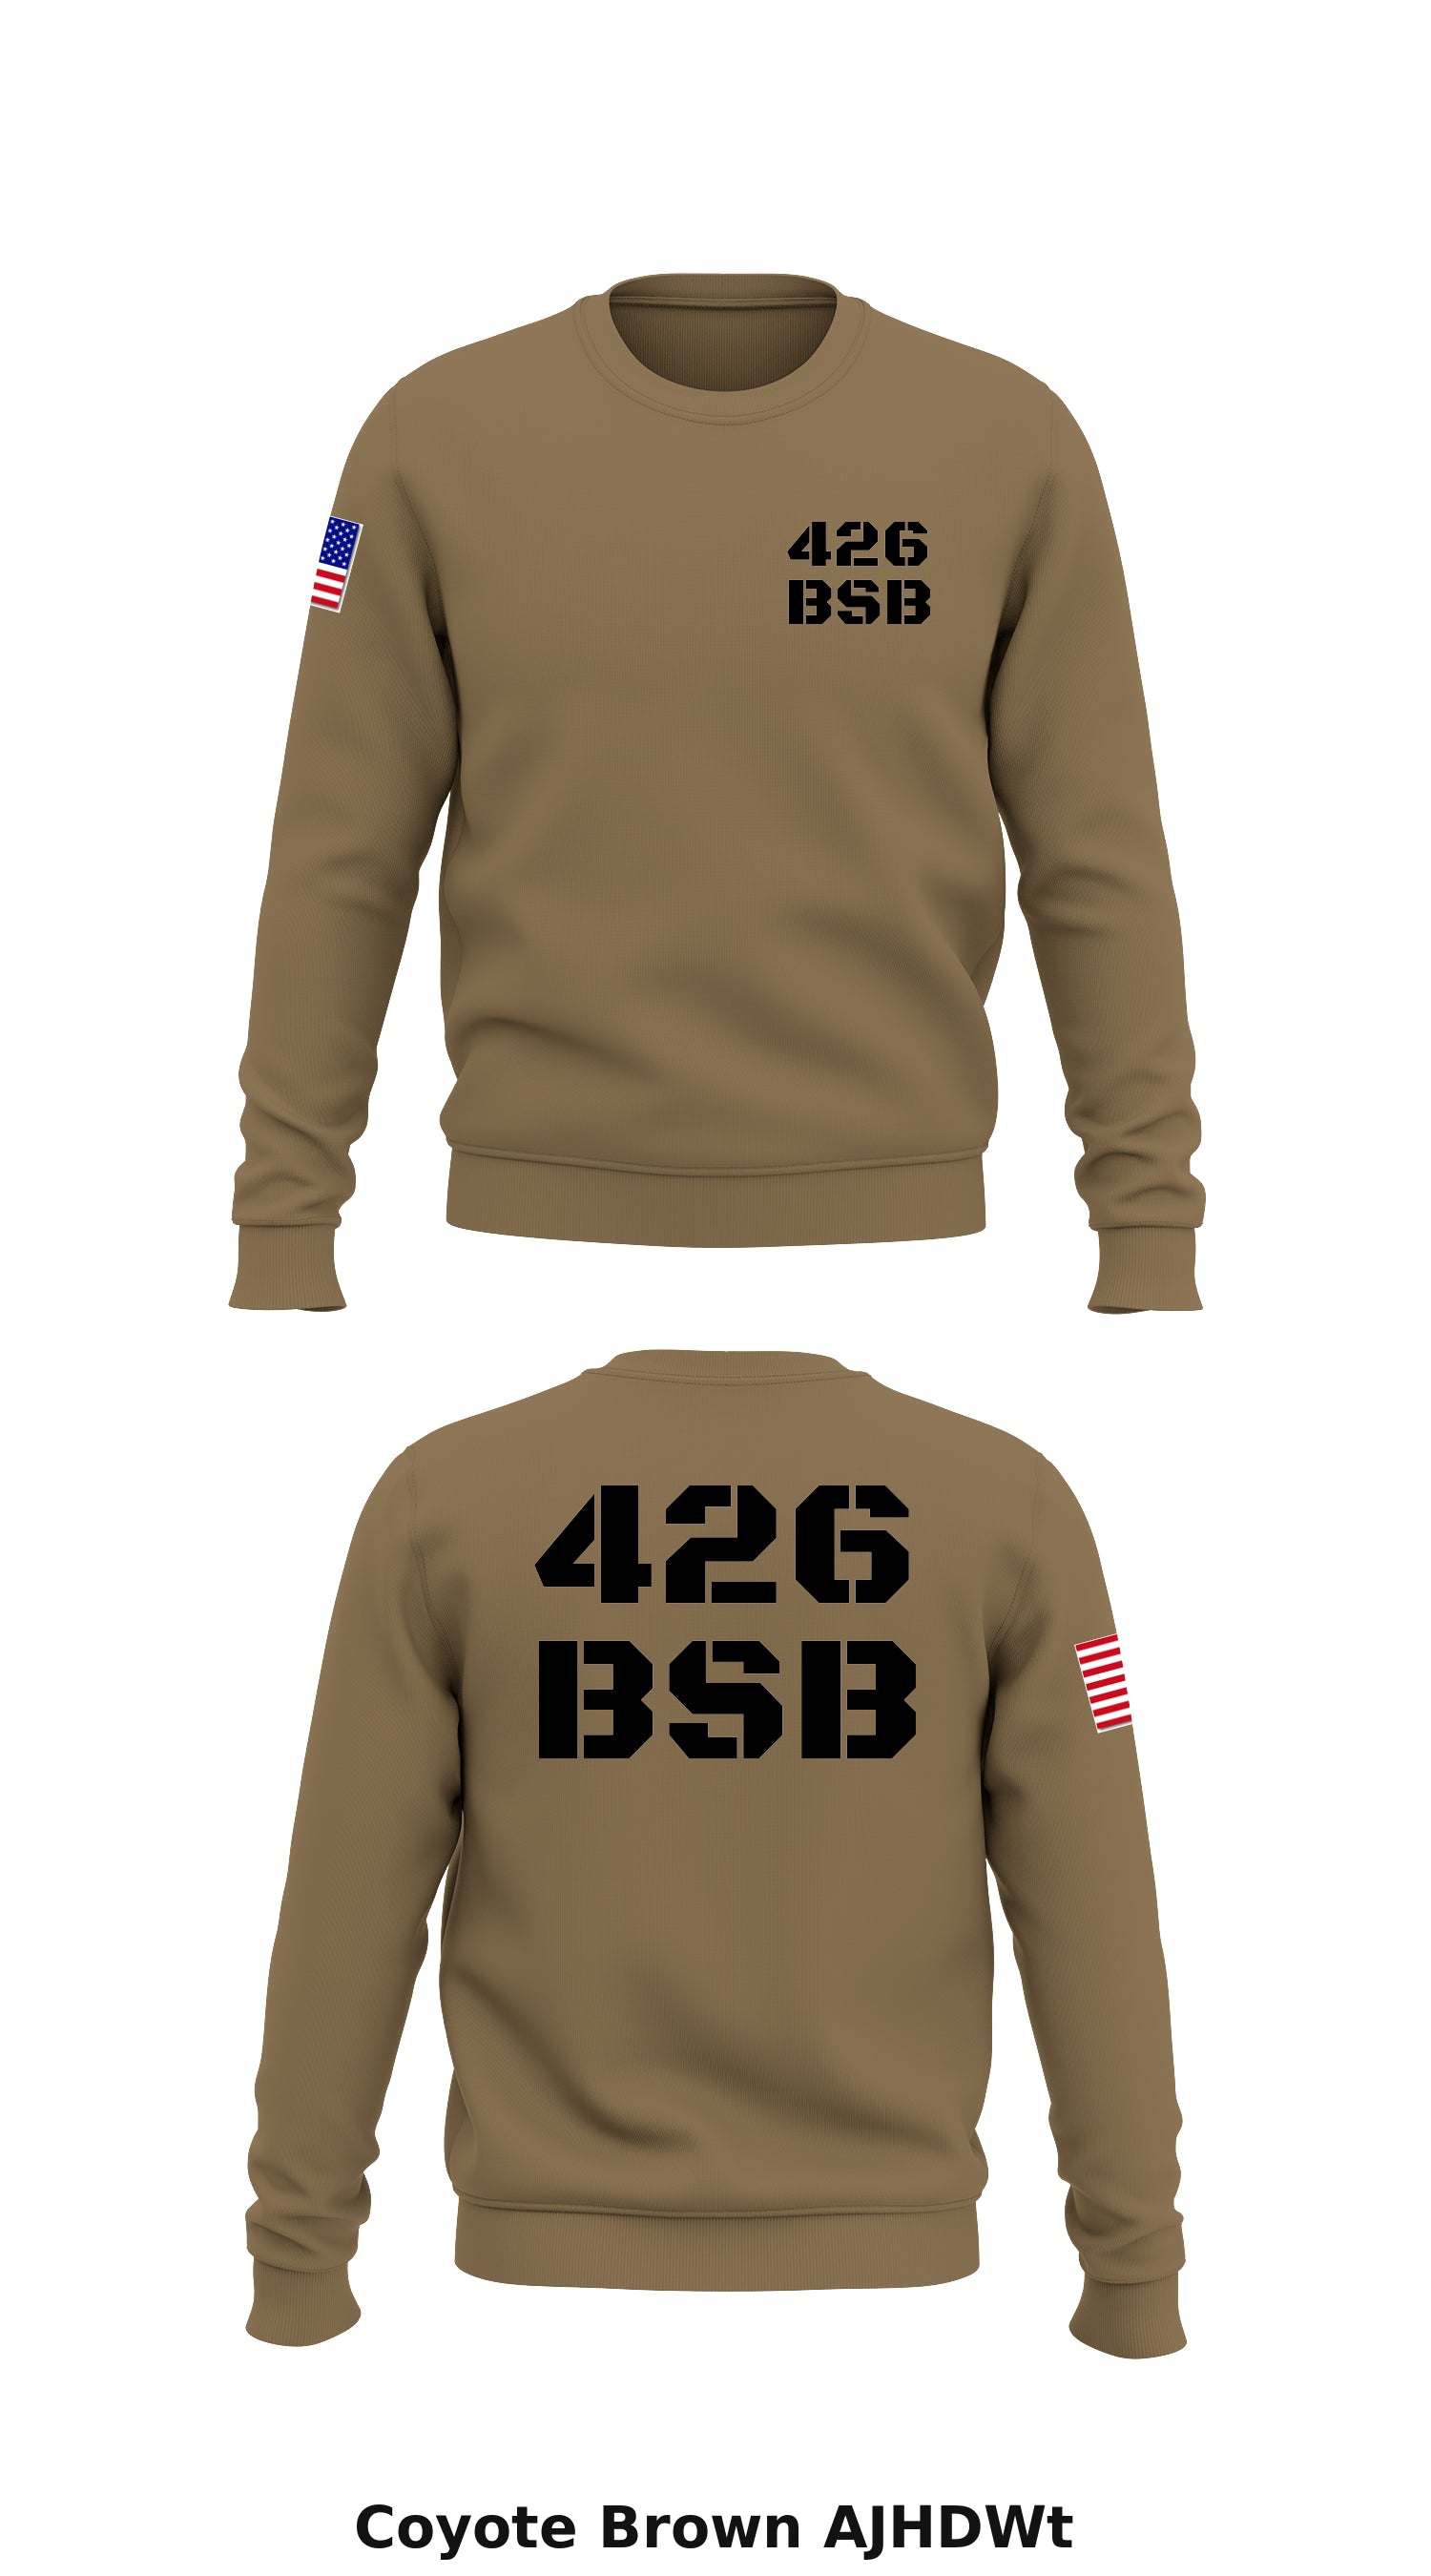 426 BSB Store 1 Crew Neck Sweatshirt - AJHDWt